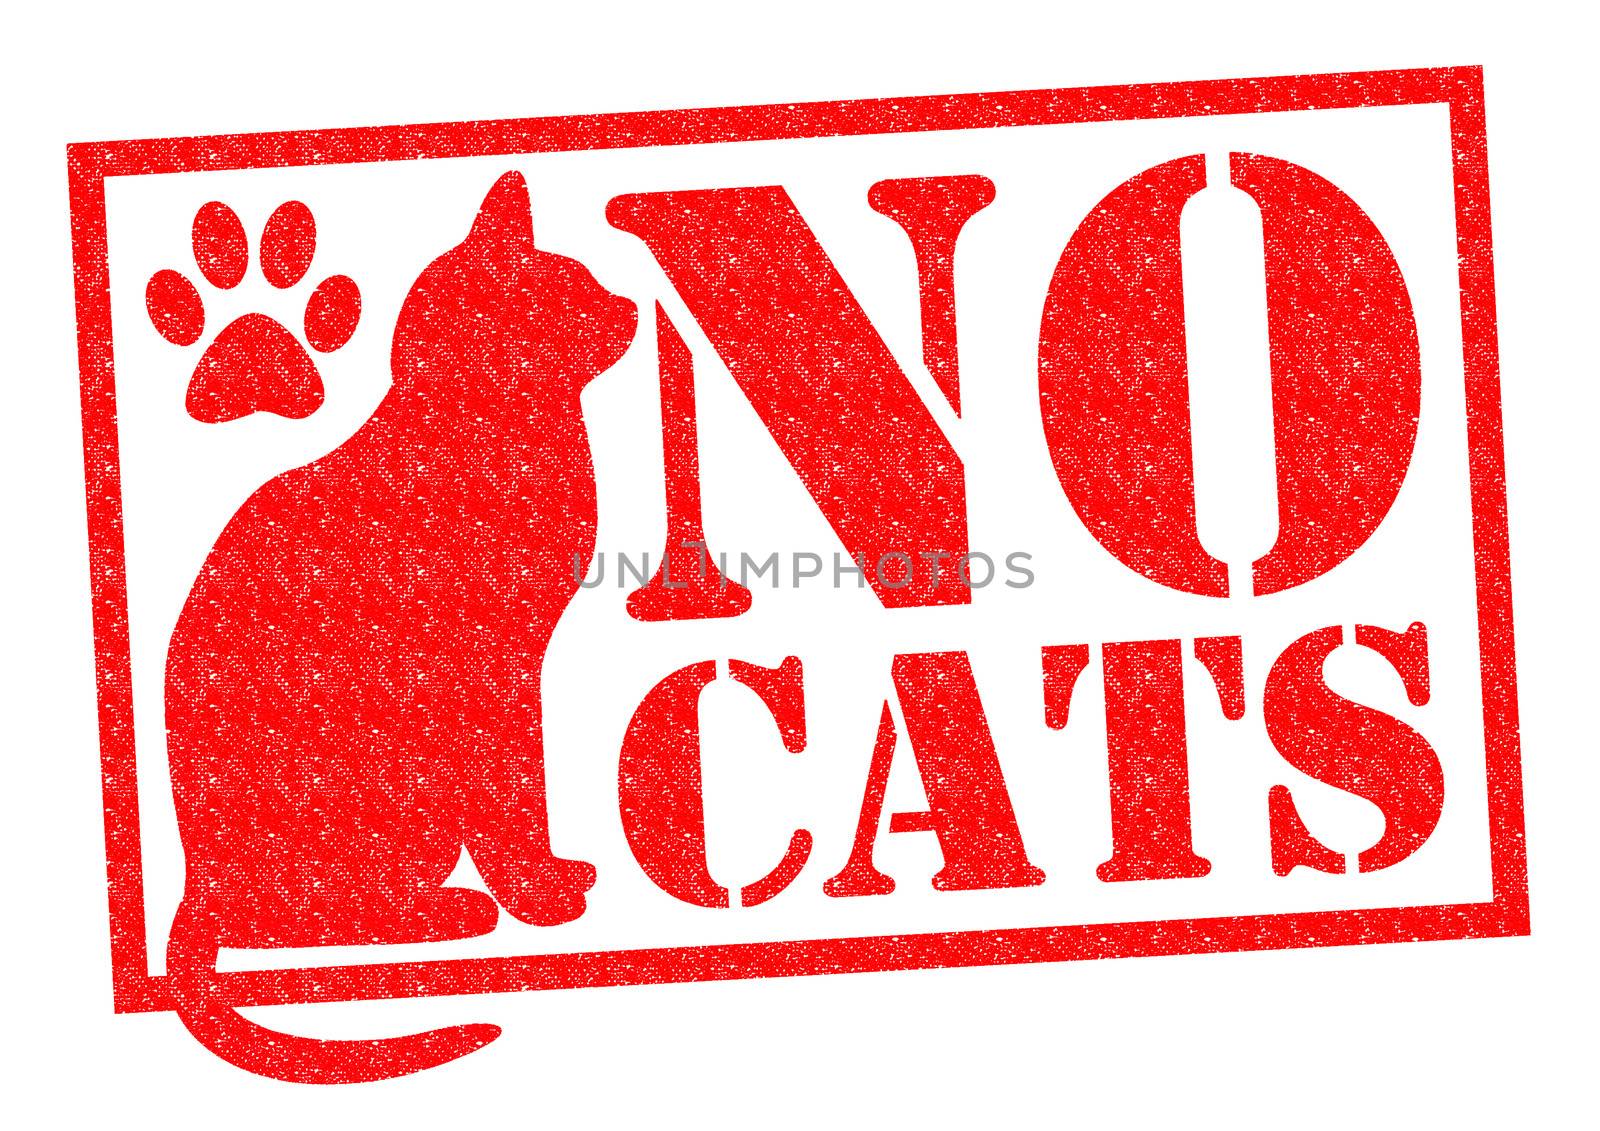 NO CATS by chrisdorney